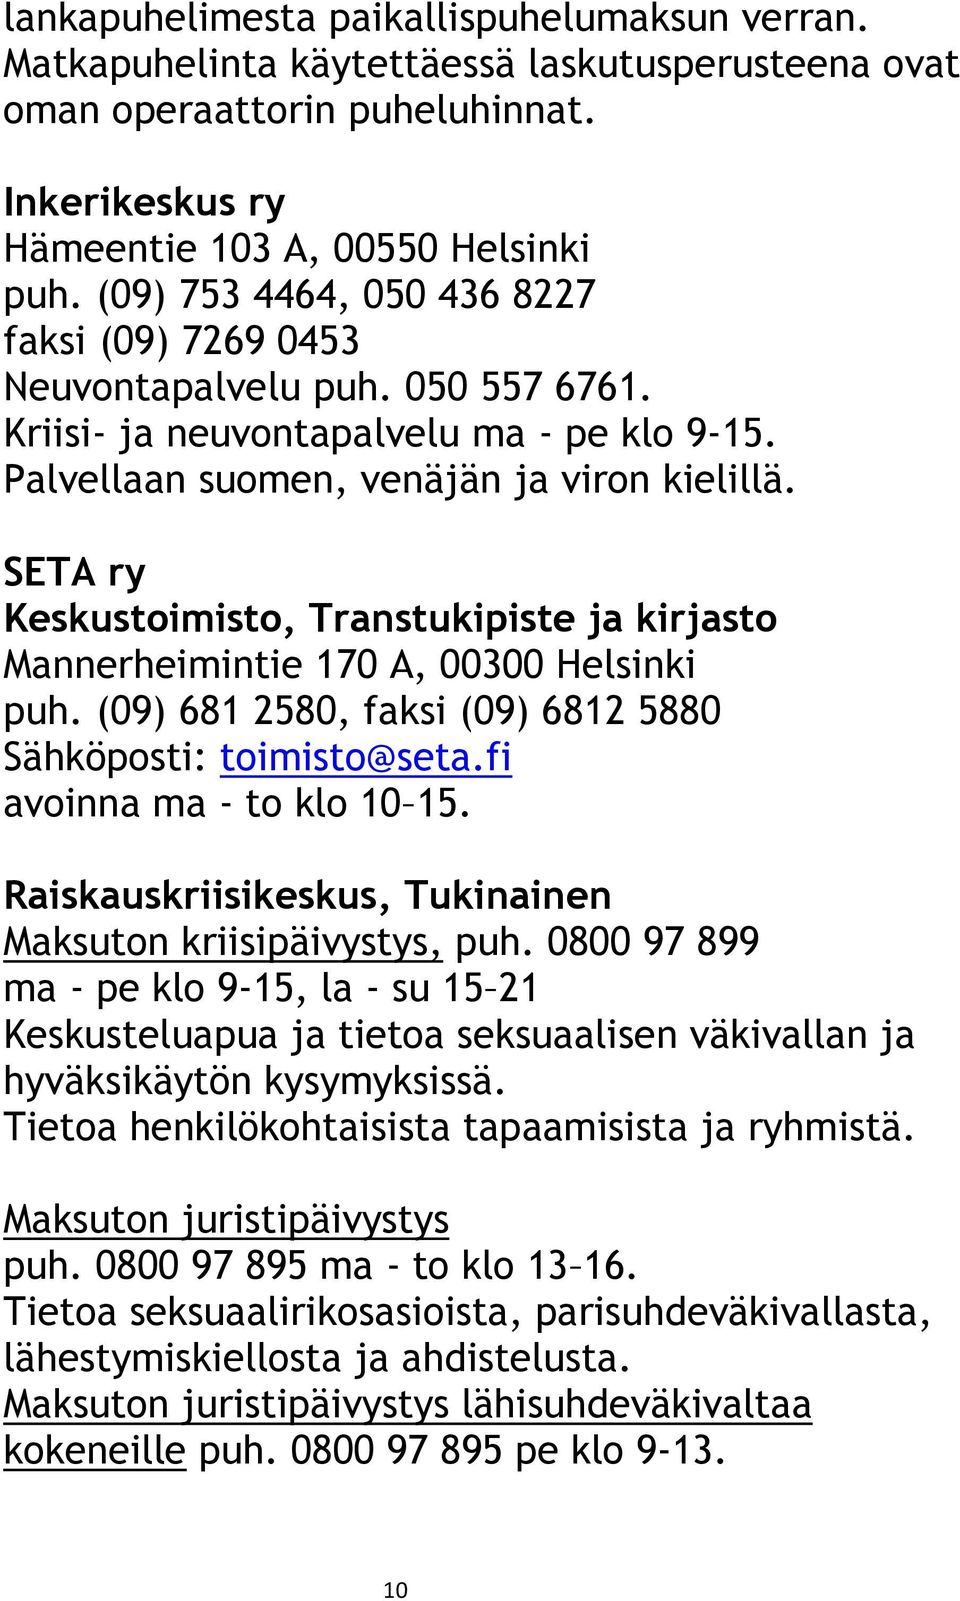 SETA ry Keskustoimisto, Transtukipiste ja kirjasto Mannerheimintie 170 A, 00300 Helsinki puh. (09) 681 2580, faksi (09) 6812 5880 Sähköposti: toimisto@seta.fi avoinna ma - to klo 10 15.